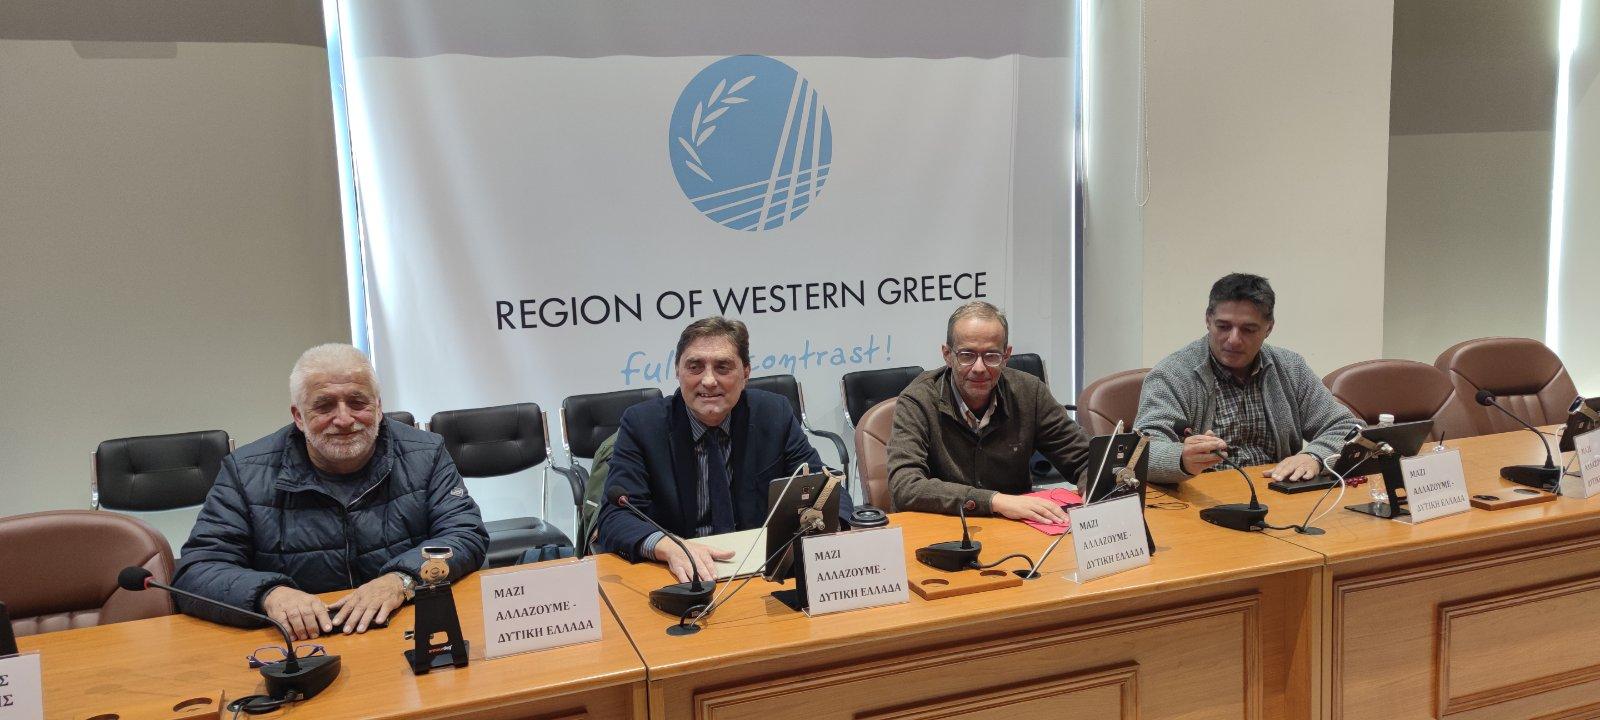 Δελτίο τύπου - Κ. Καρπέτας - «Μαζί Αλλάζουμε – Δυτική Ελλάδα»: Η λειτουργία των Οργανισμών Εγγείων Βελτιώσεων, η μείωση του τουρισμού και οι αντιδημοκρατικές εκτροπές στη συνεδρίαση λογοδοσίας 